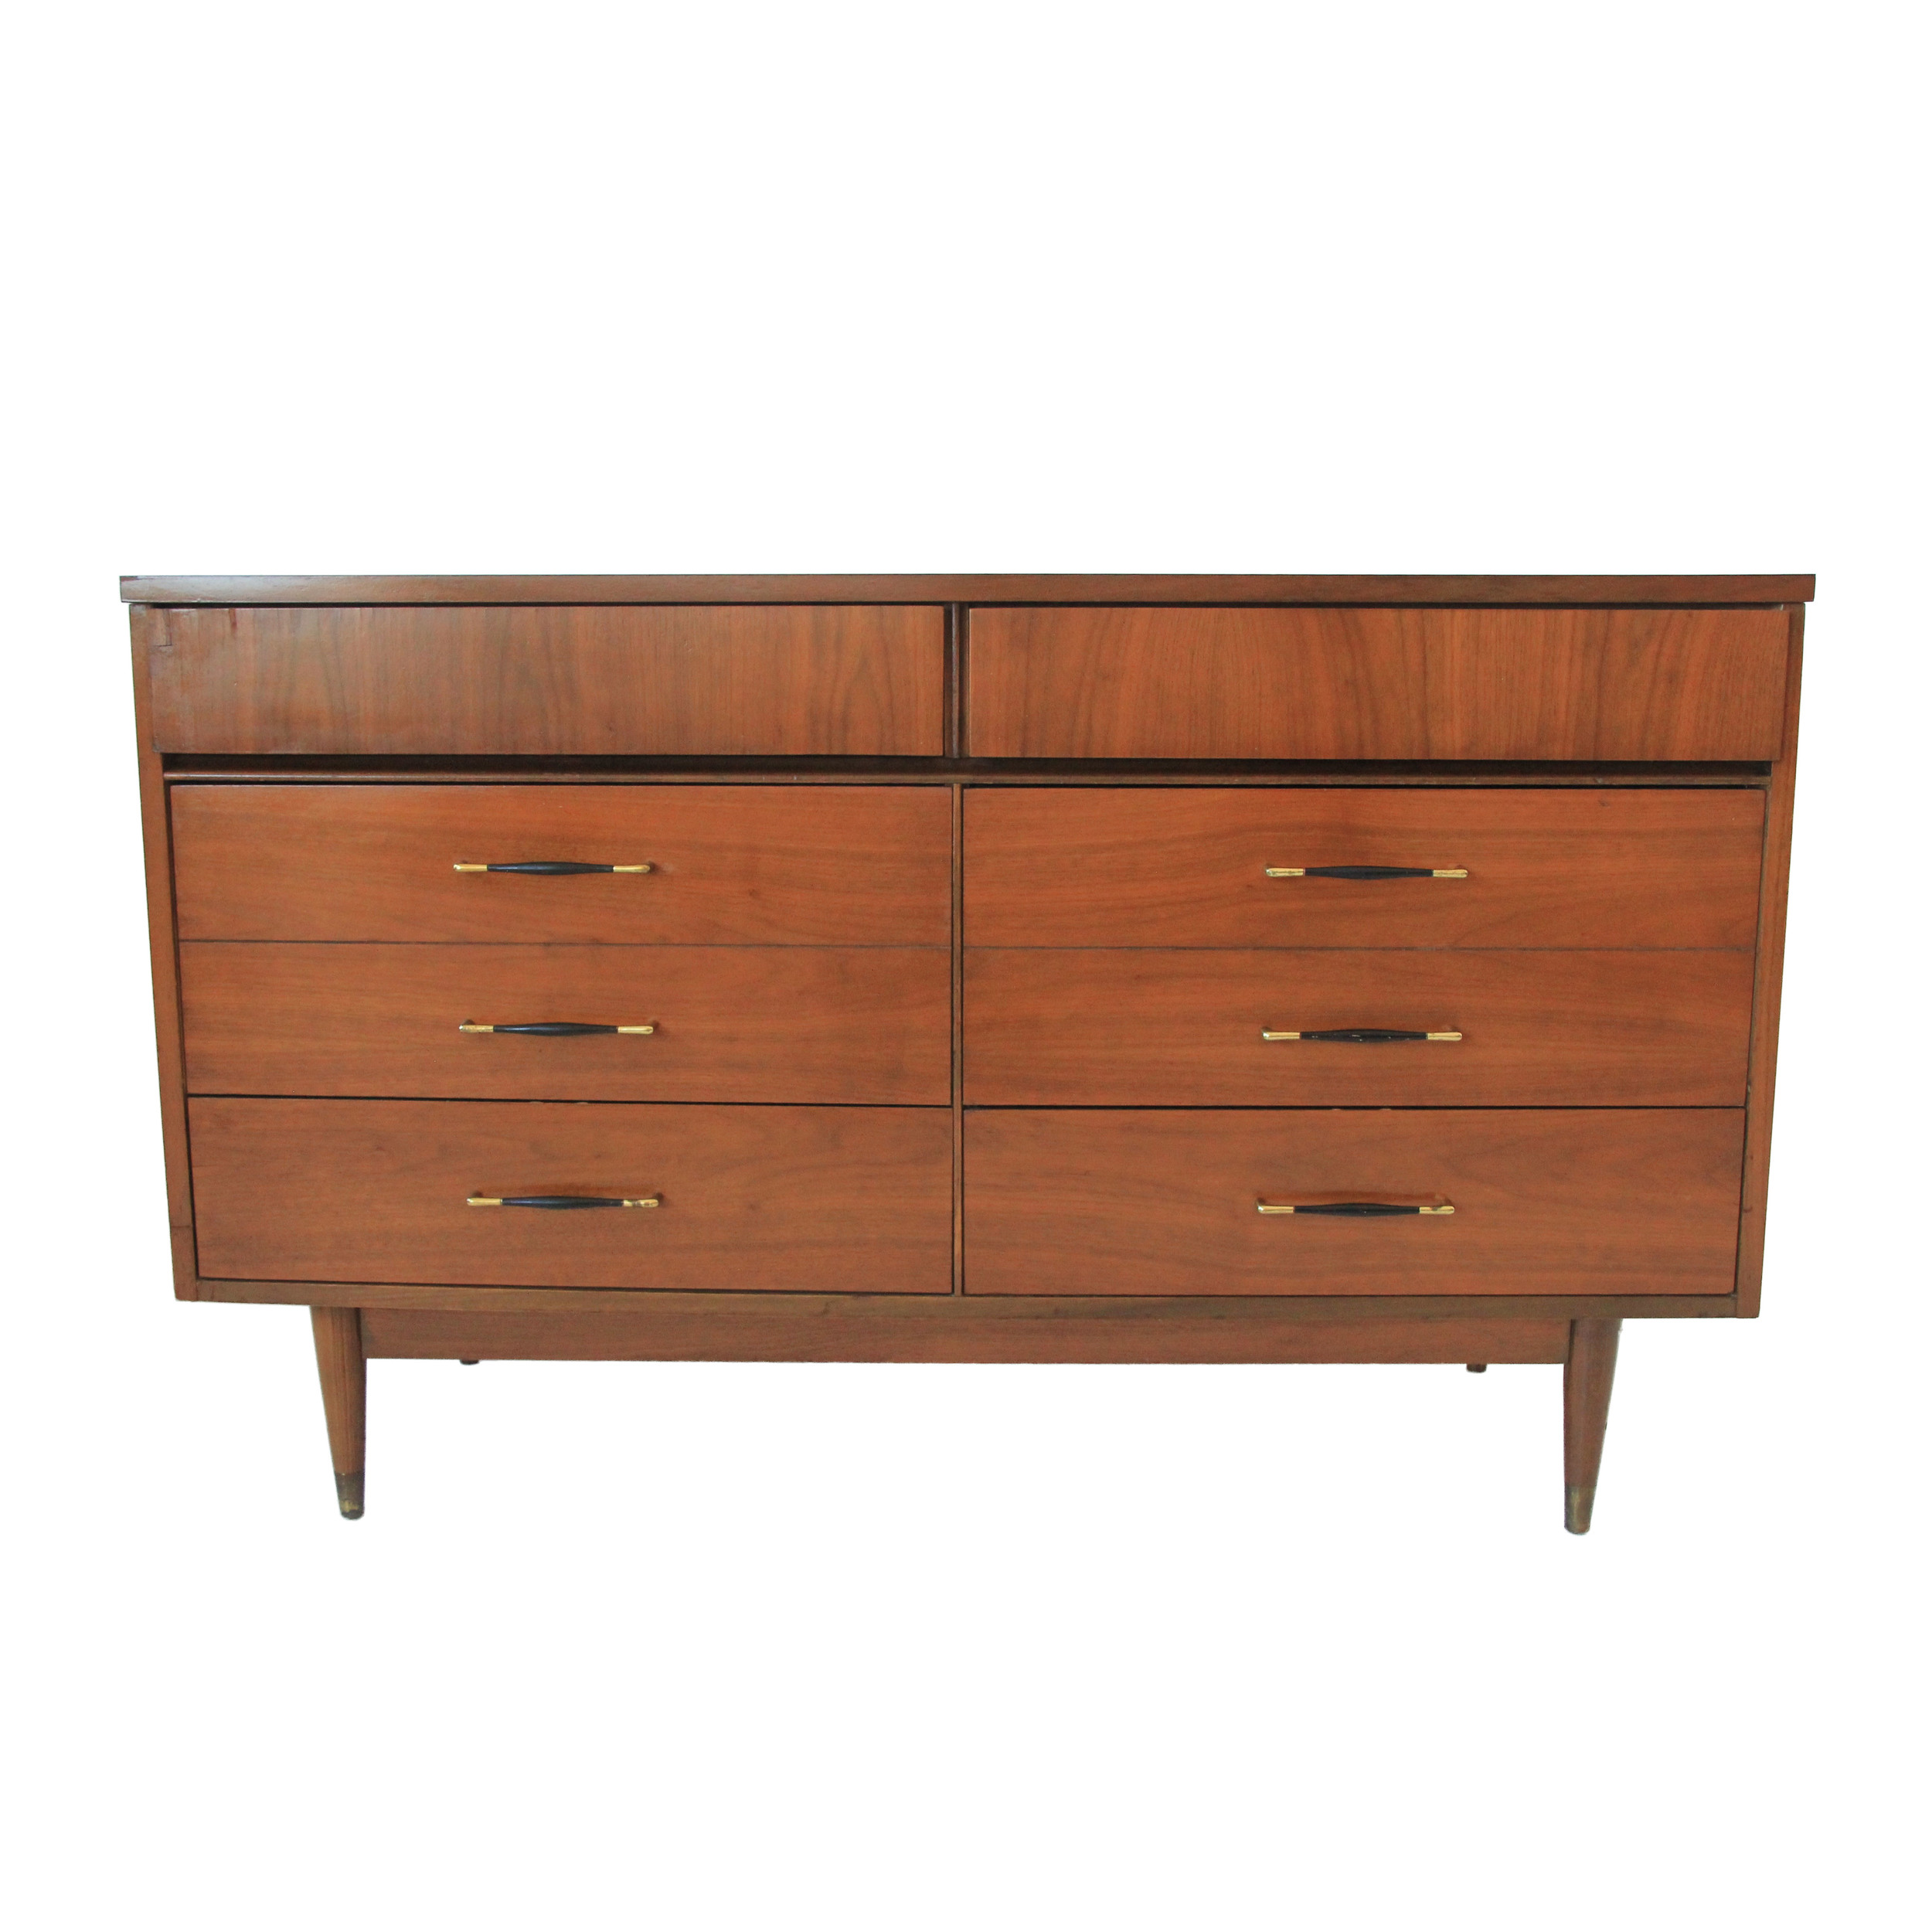 6 drawer mid century modern dresser.jpg